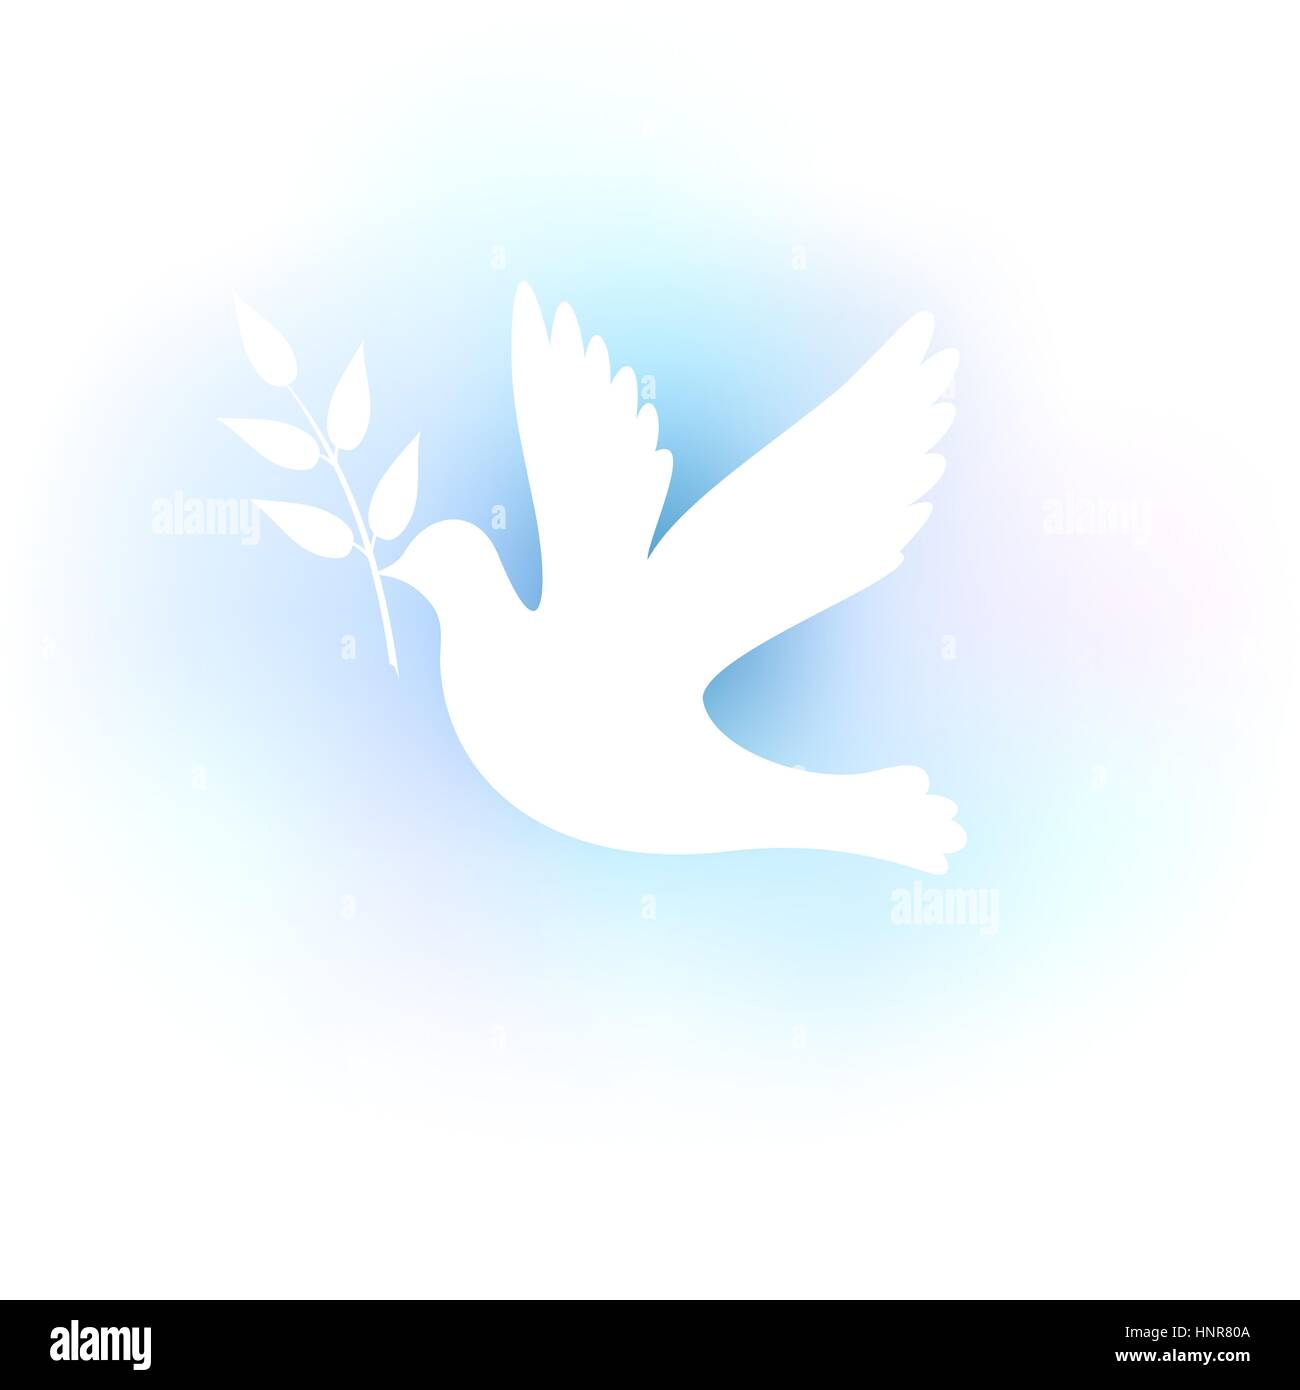 Abbildung mit einem weißen Silhouette einer Taube auf blauem Grund. Stock Vektor